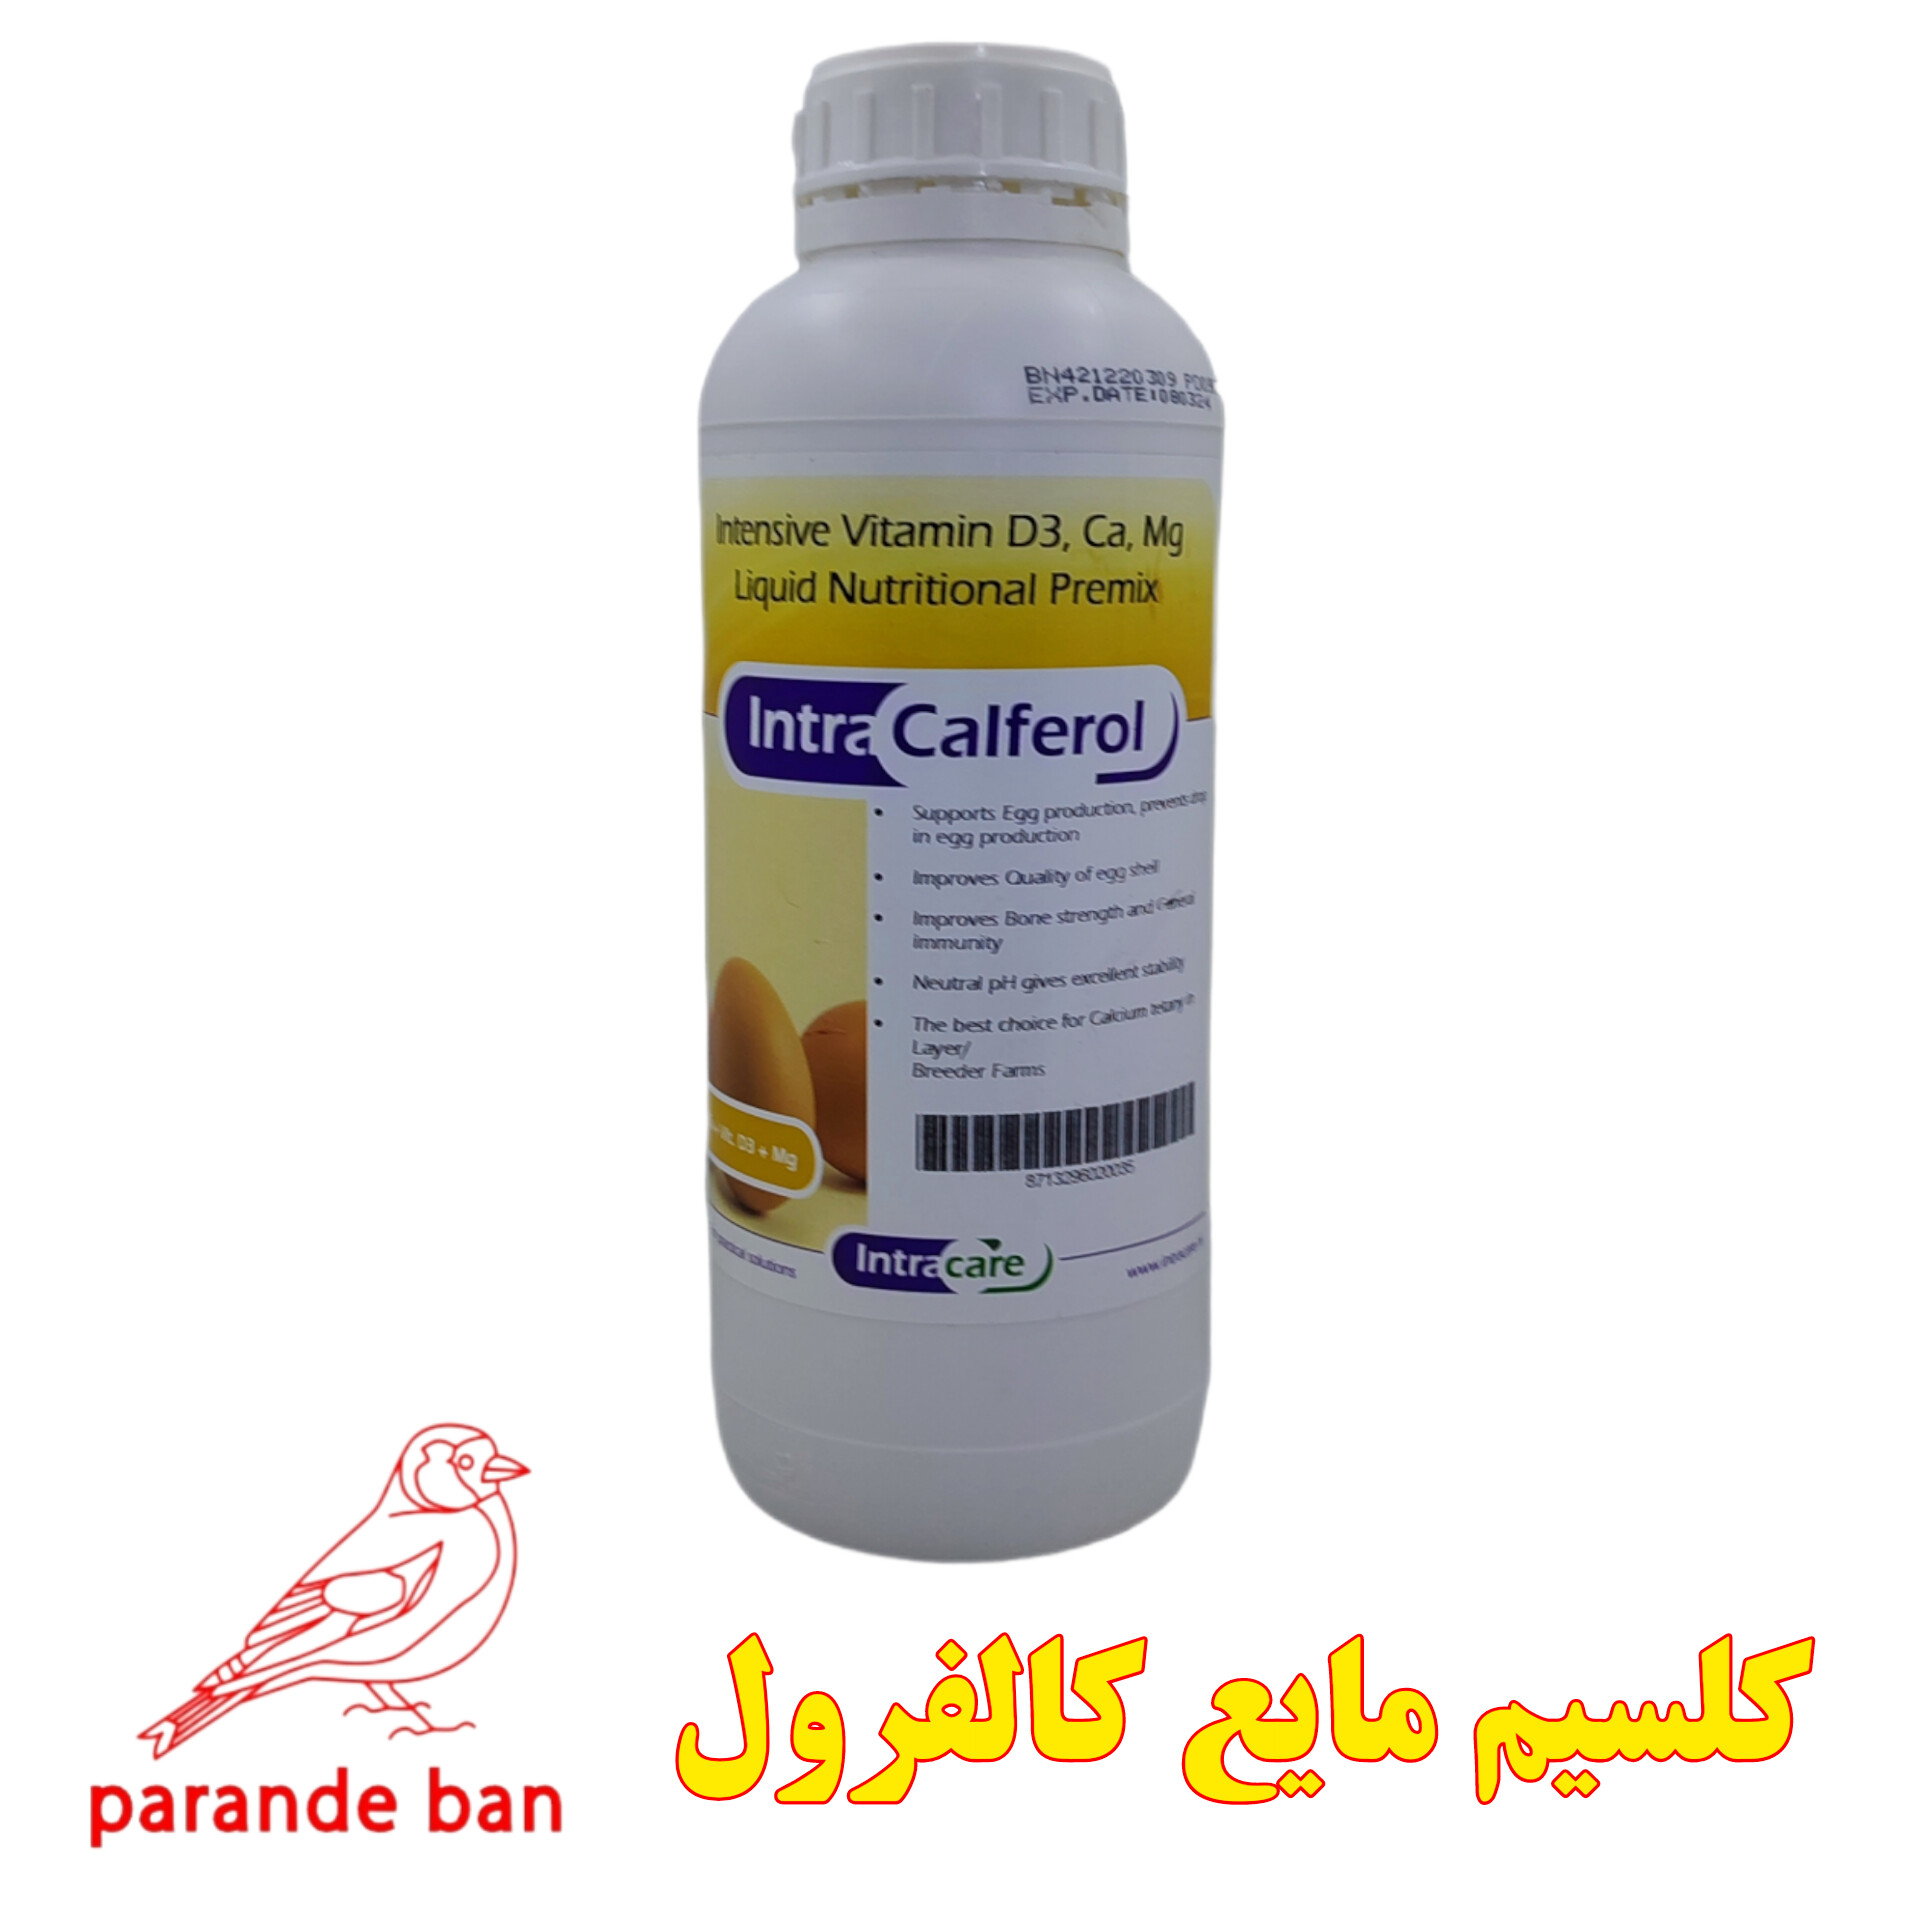 اینترا کالفرول ترکیبی منحصر به فرد از ویتامین D3 و کلسیم و منیزیم intra calferol